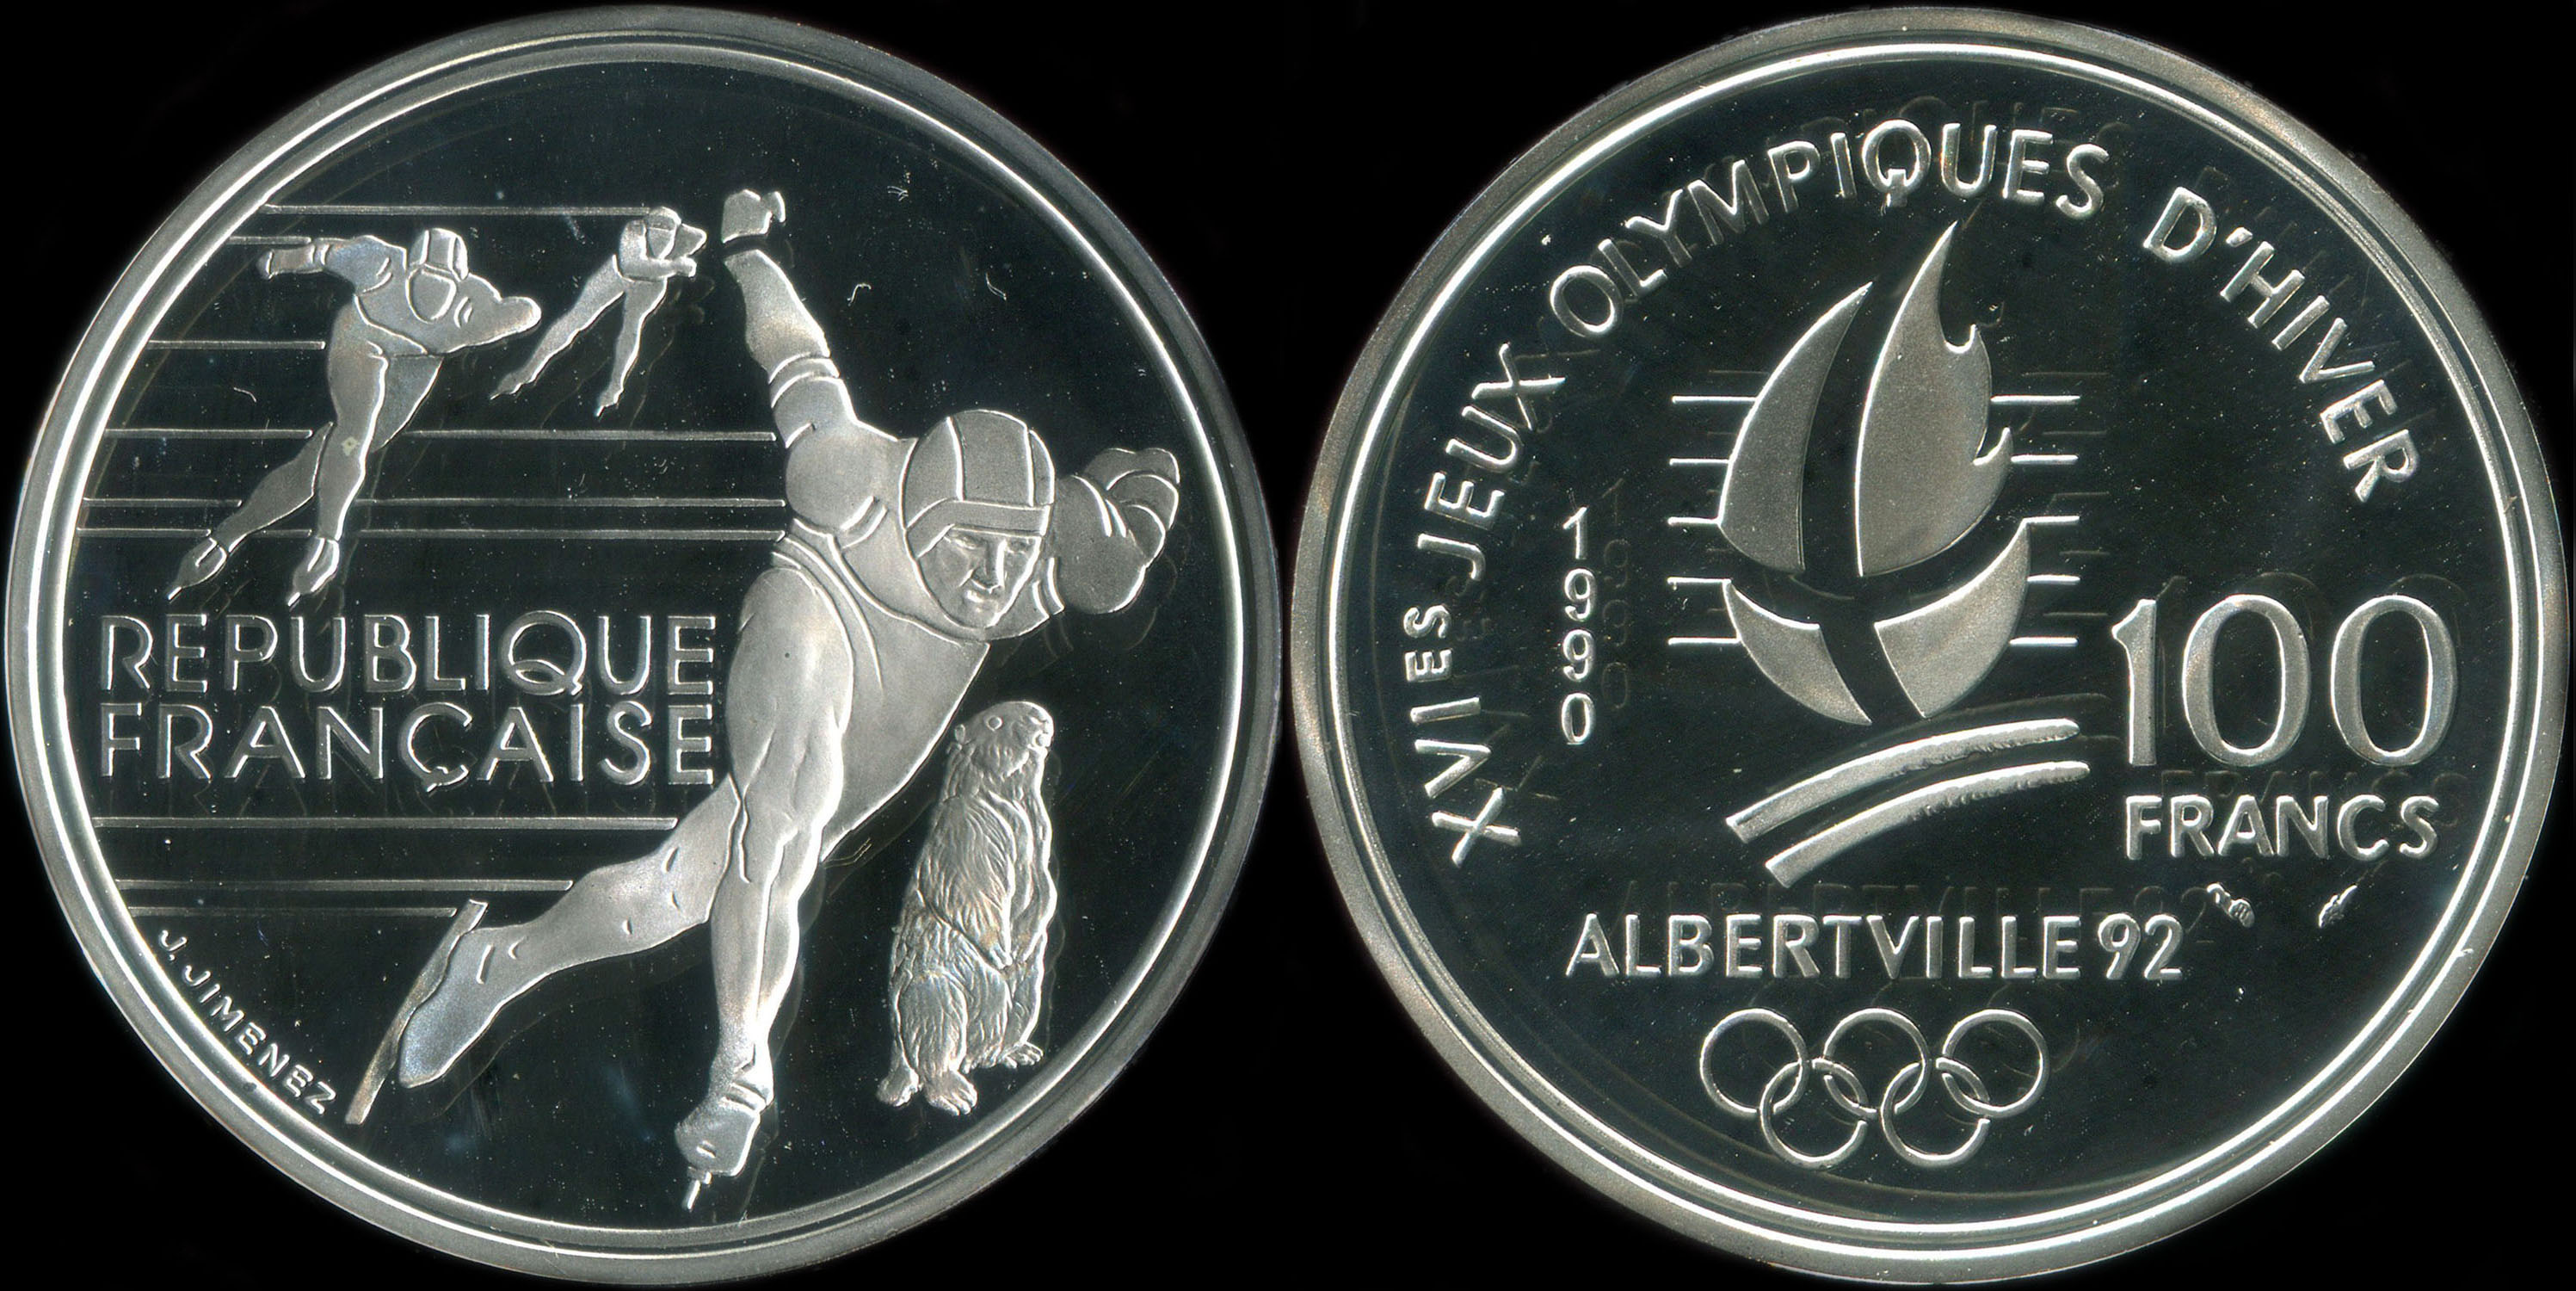 Pice de 100 francs 1990 - XVIes Jeux Olympiques d'Hiver - Albertville 92 - Patinage de vitesse - Marmotte